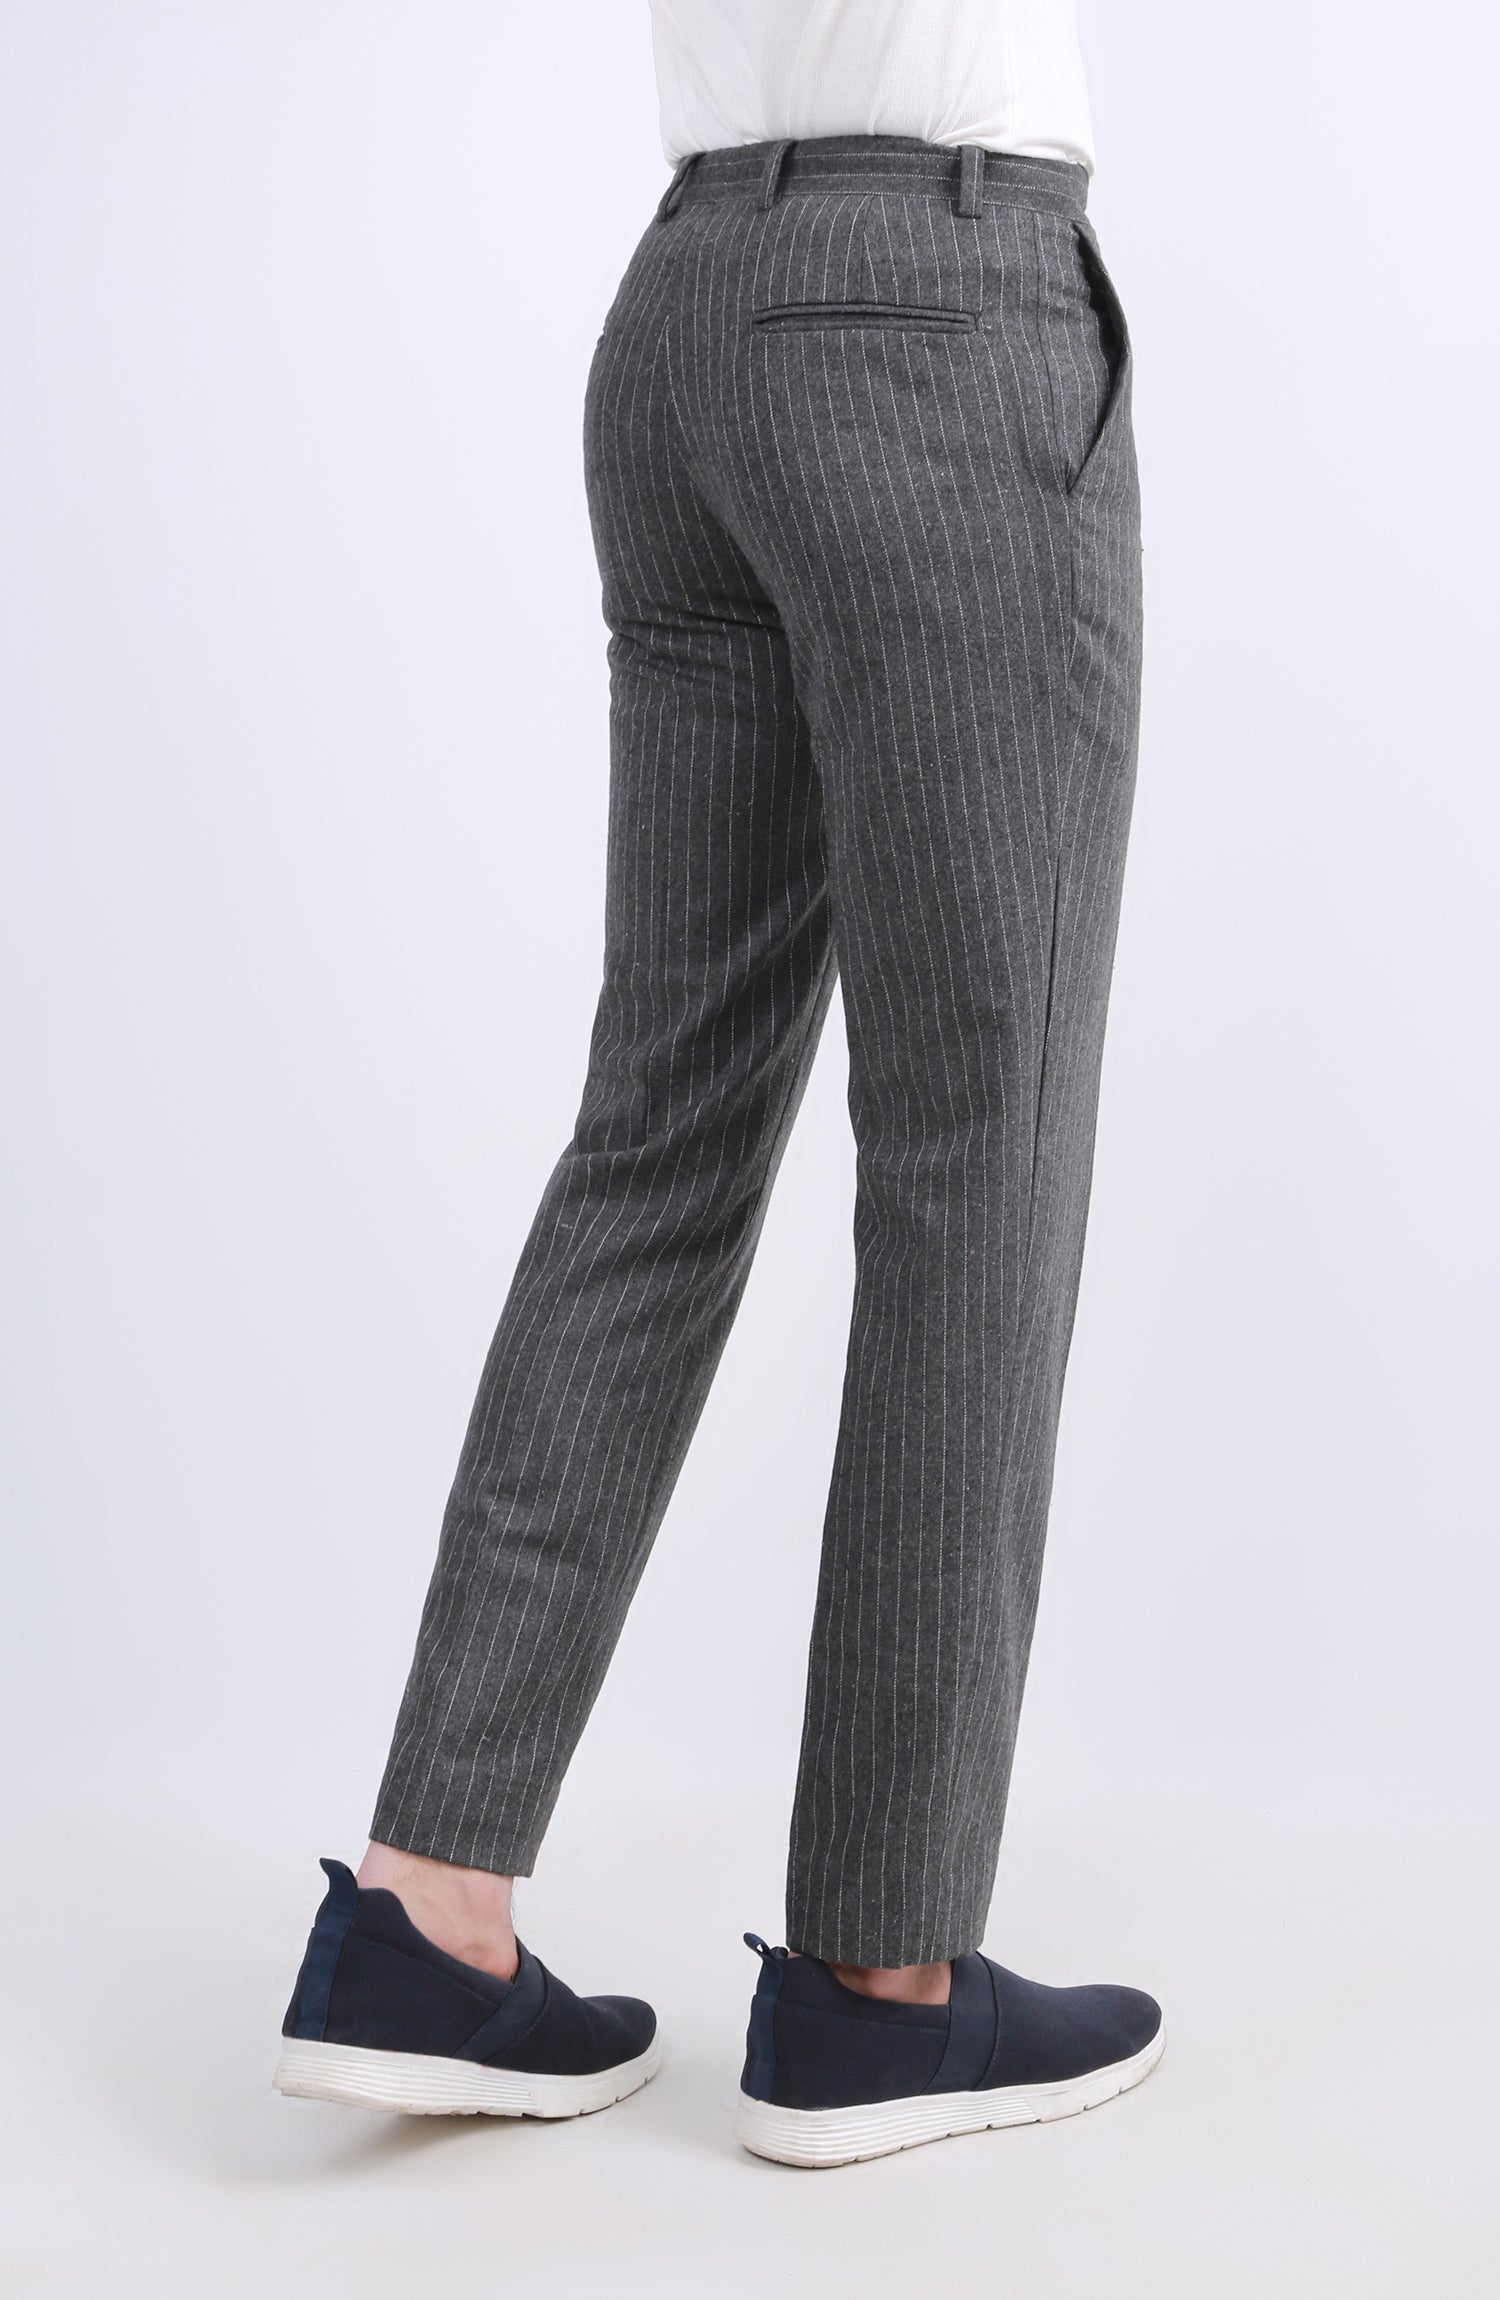 LL Bean 100% Wool Dress Pants Mens Size 36 x 30 Camel Beige Tan  www.frozit.in